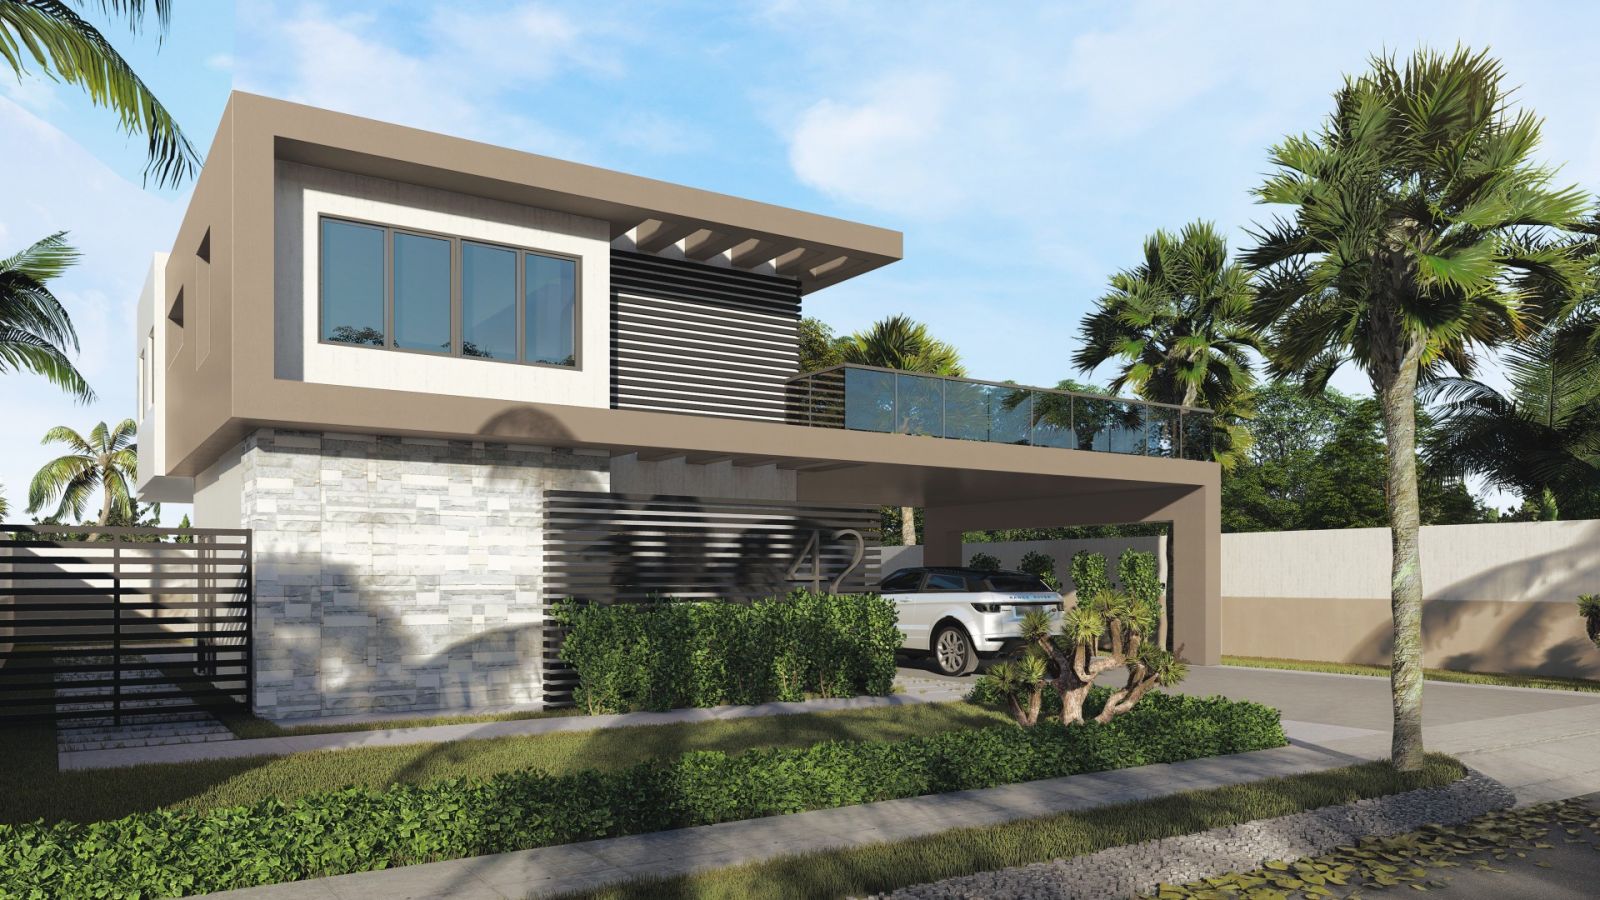 2359 Quieres un Casa en Punta Cana en un proyecto con un verdadero Parque  de Atraccion desde 147,000 US$? Bavaro/Punta Cana Bienes Raices Republica  Dominicana